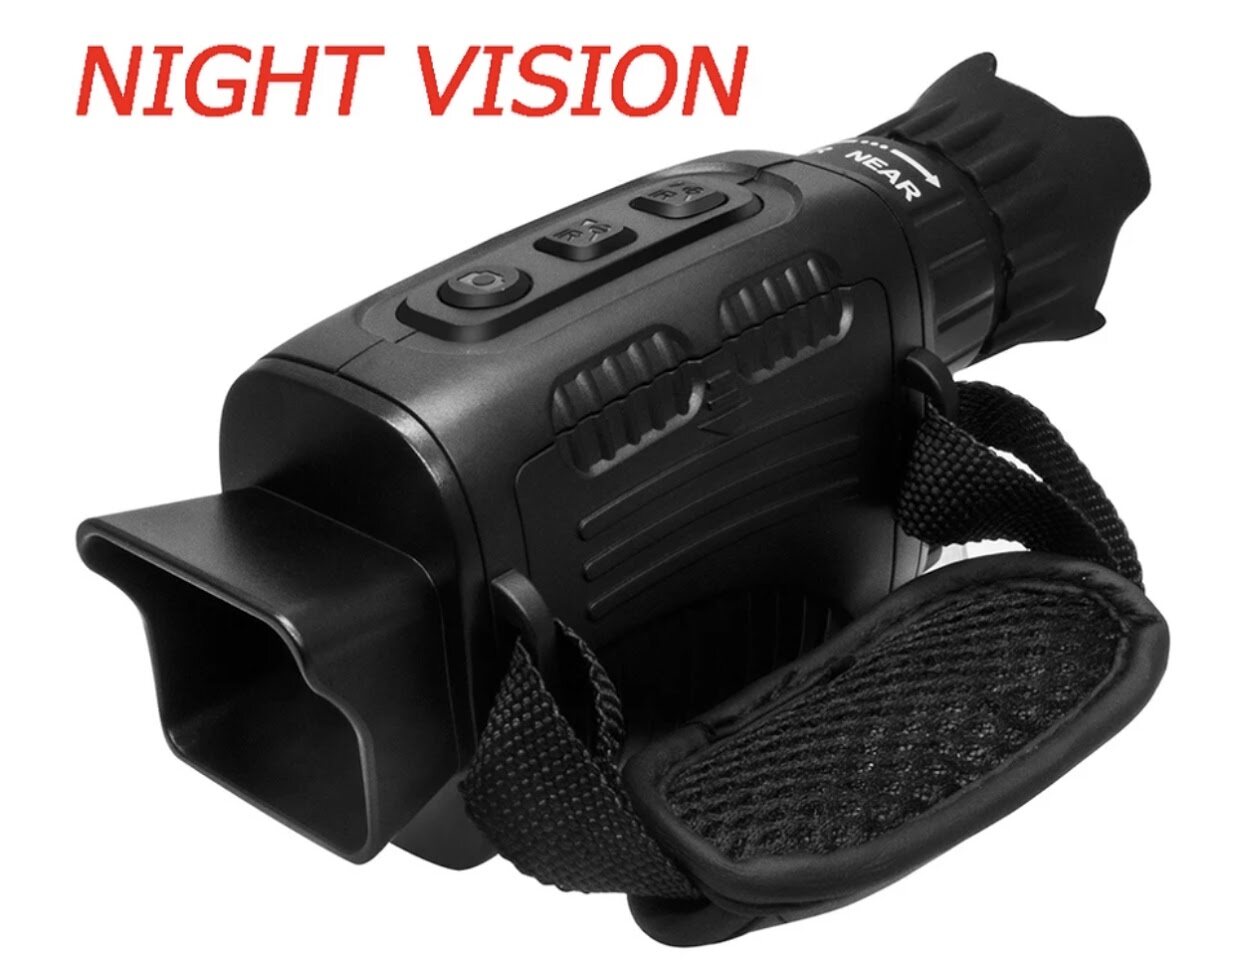 พร้อมส่ง ของแท้100% กล้องส่องทางไกล NV3185 Night Vision ดูกลางคืนได้ กล้องชัด กล้องโทรทรรศน์